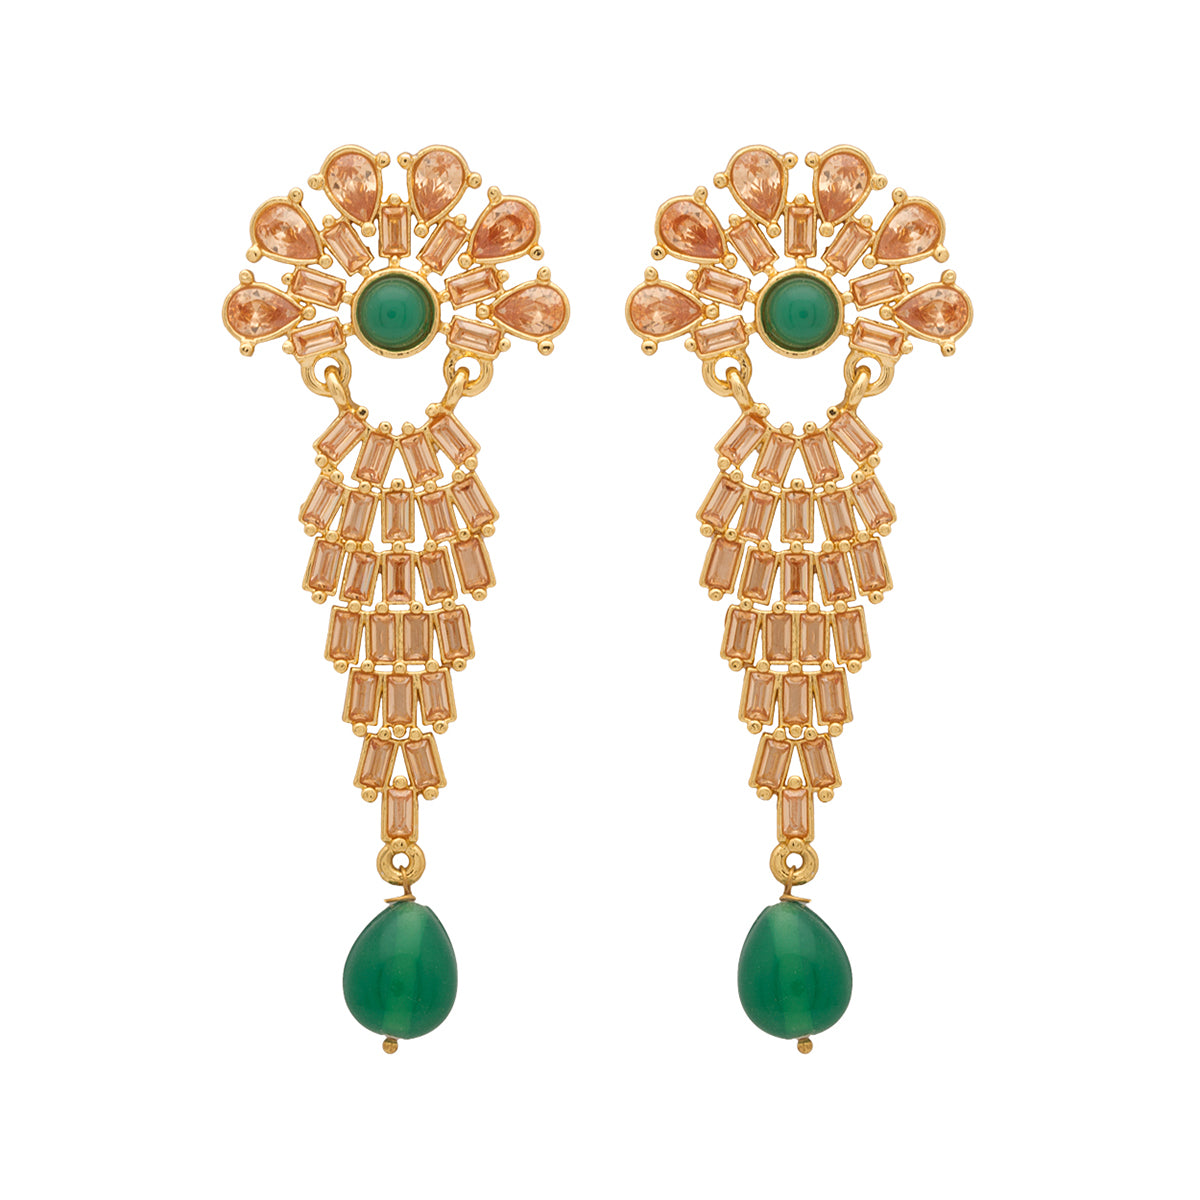 Designer Beige Colored Stones Studded Dangler Earrings For Women